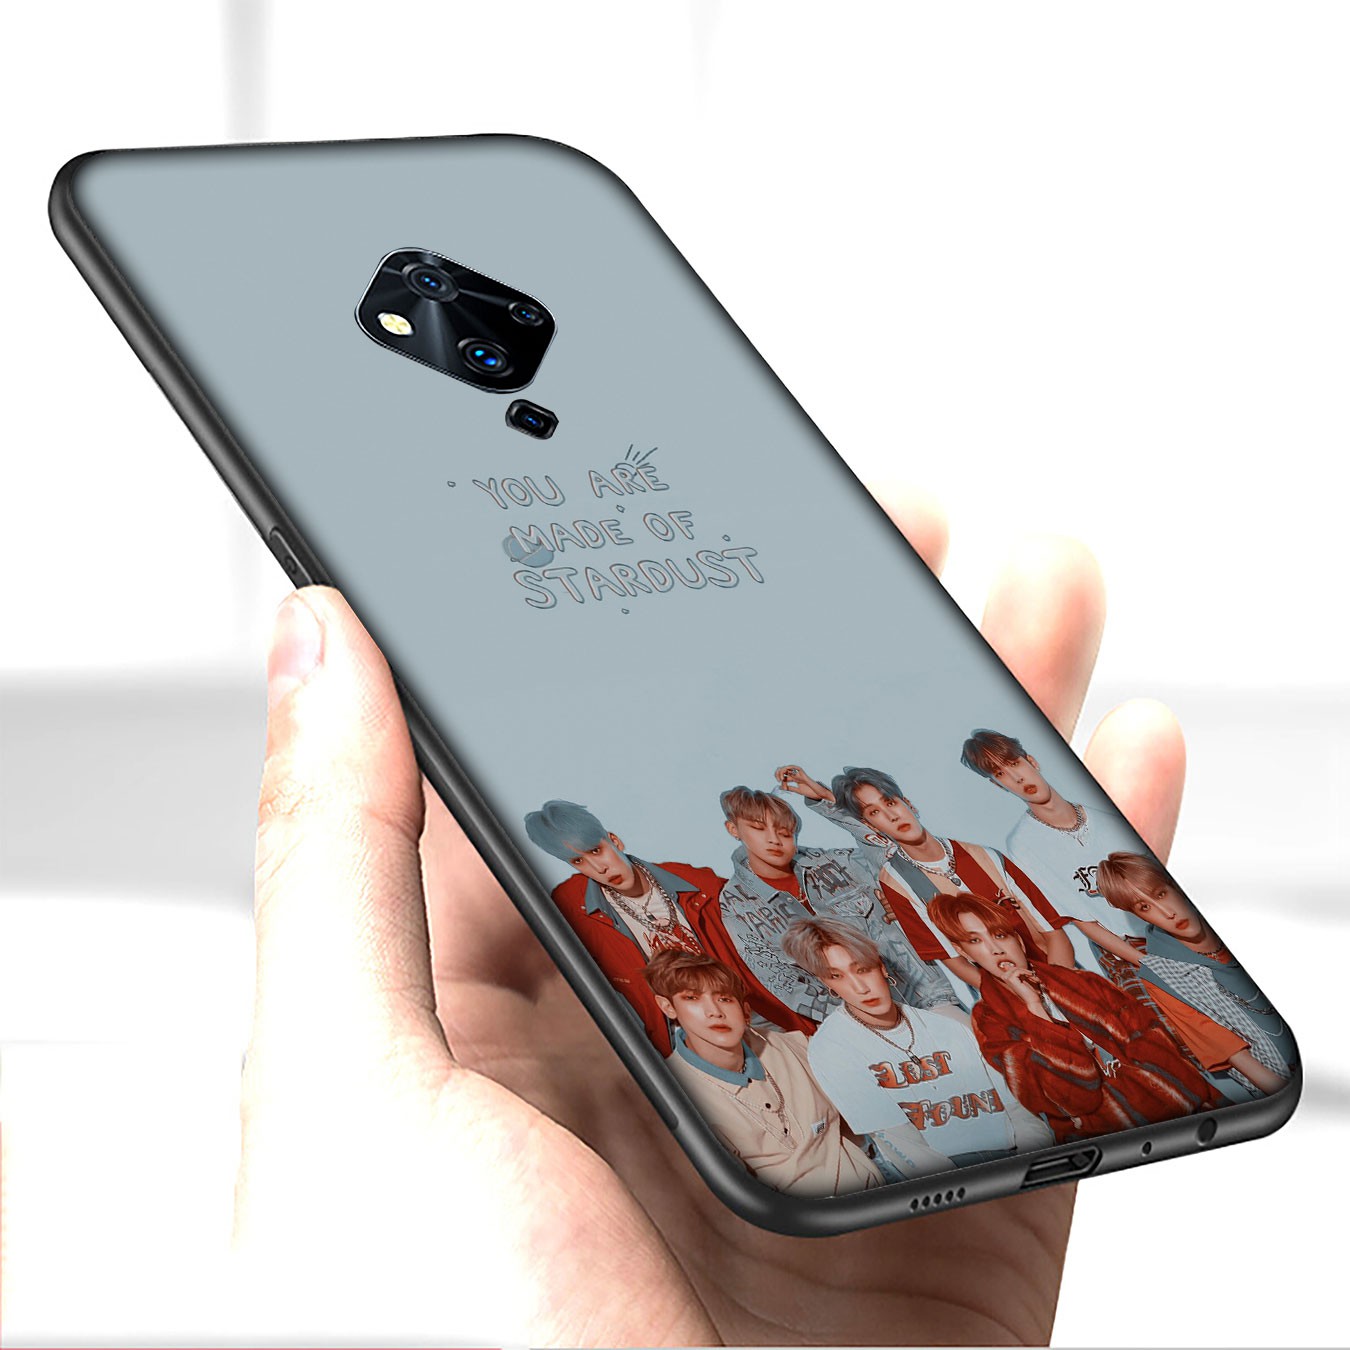 Ốp điện thoại họa tiết nhóm nhạc Hàn Quốc ATEEZ cho Samsung Galaxy S21 Ultra S8 Plus M31 M51 A11 A31 A51 S8+ S21Plus